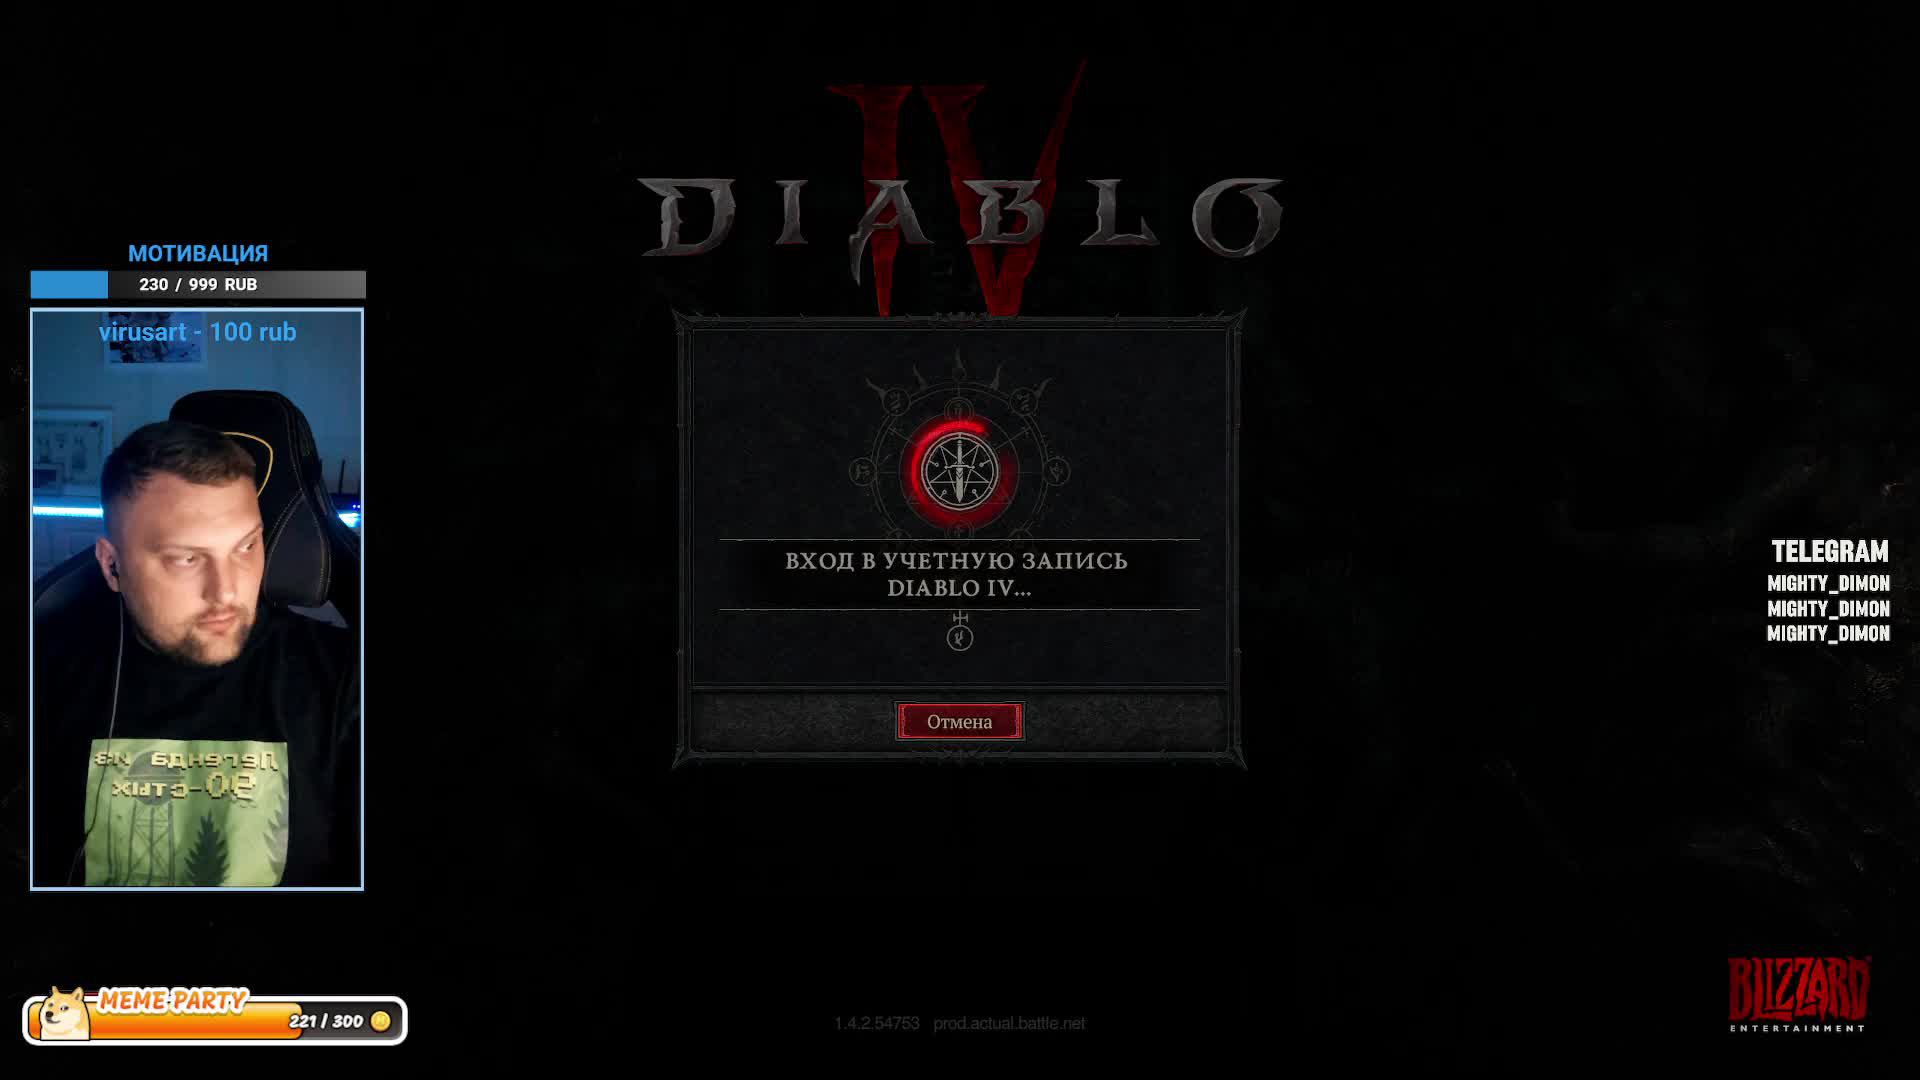 Diablo 4| ФУЛЛ ФАРМ ДРУИДА #Diablo